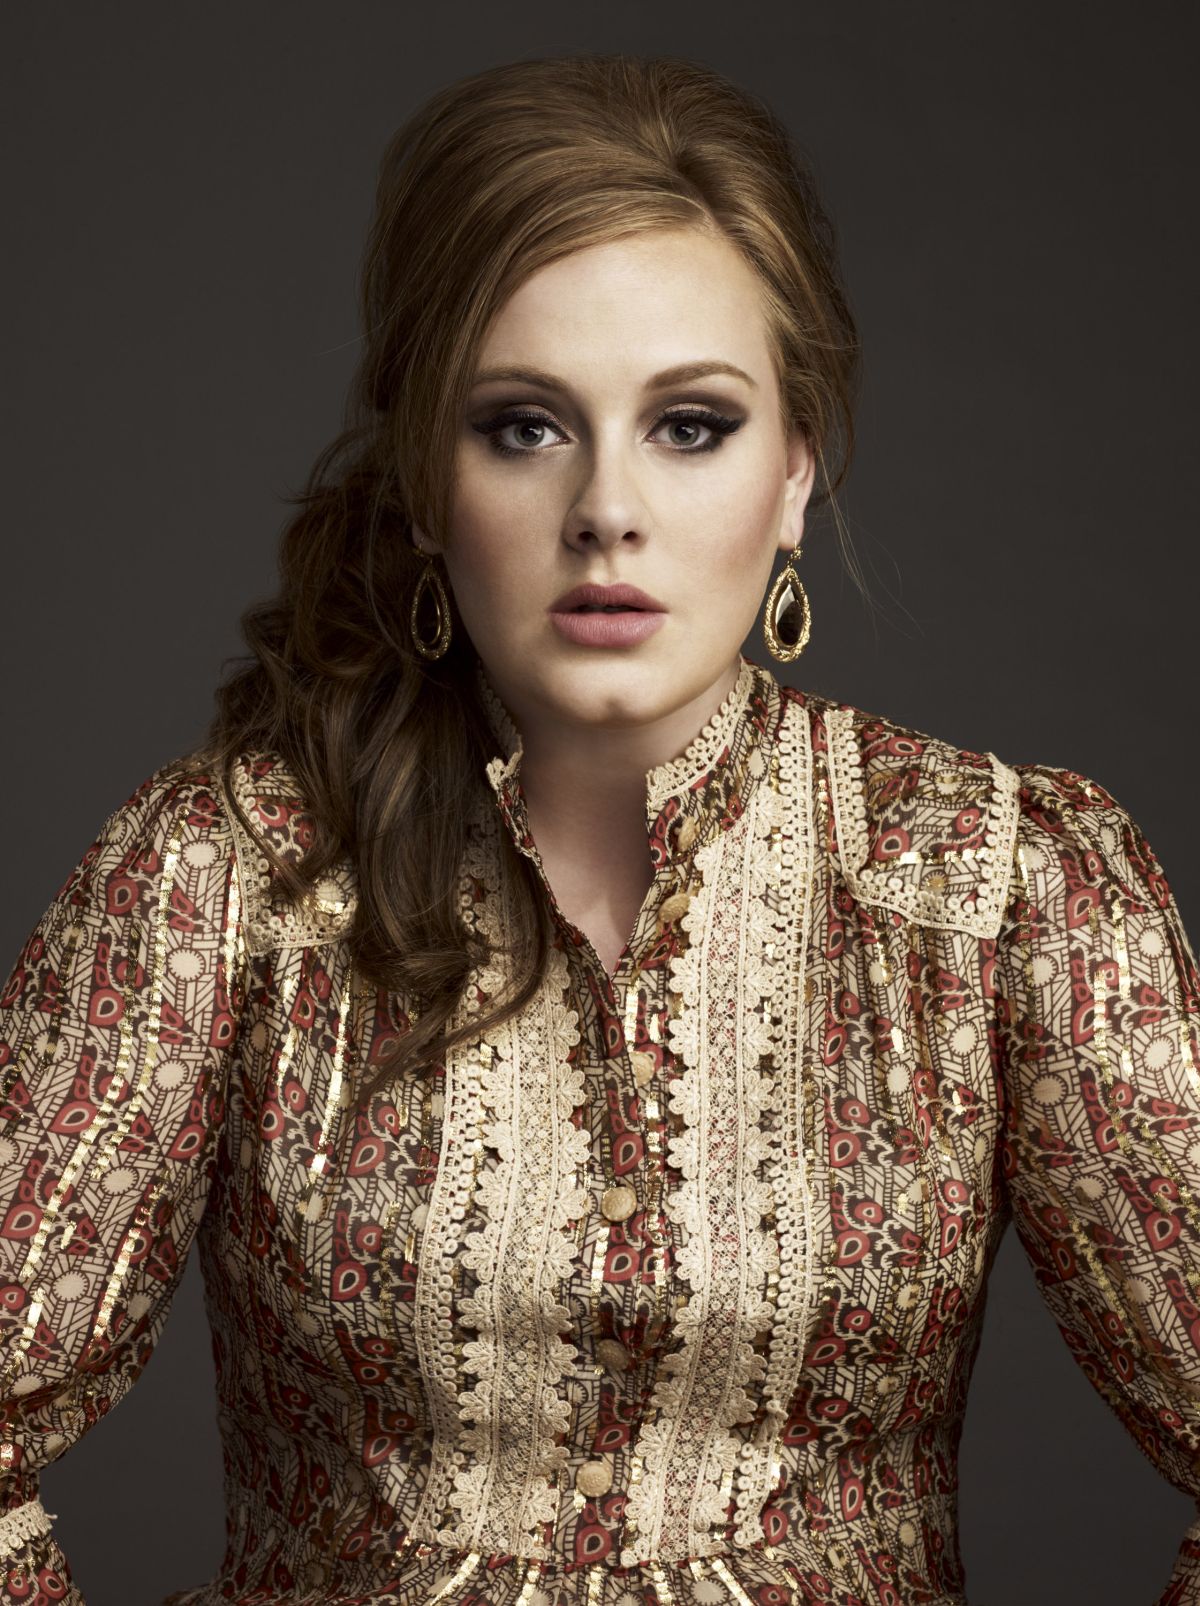 Adele artystką roku według magazynu "Billboard"